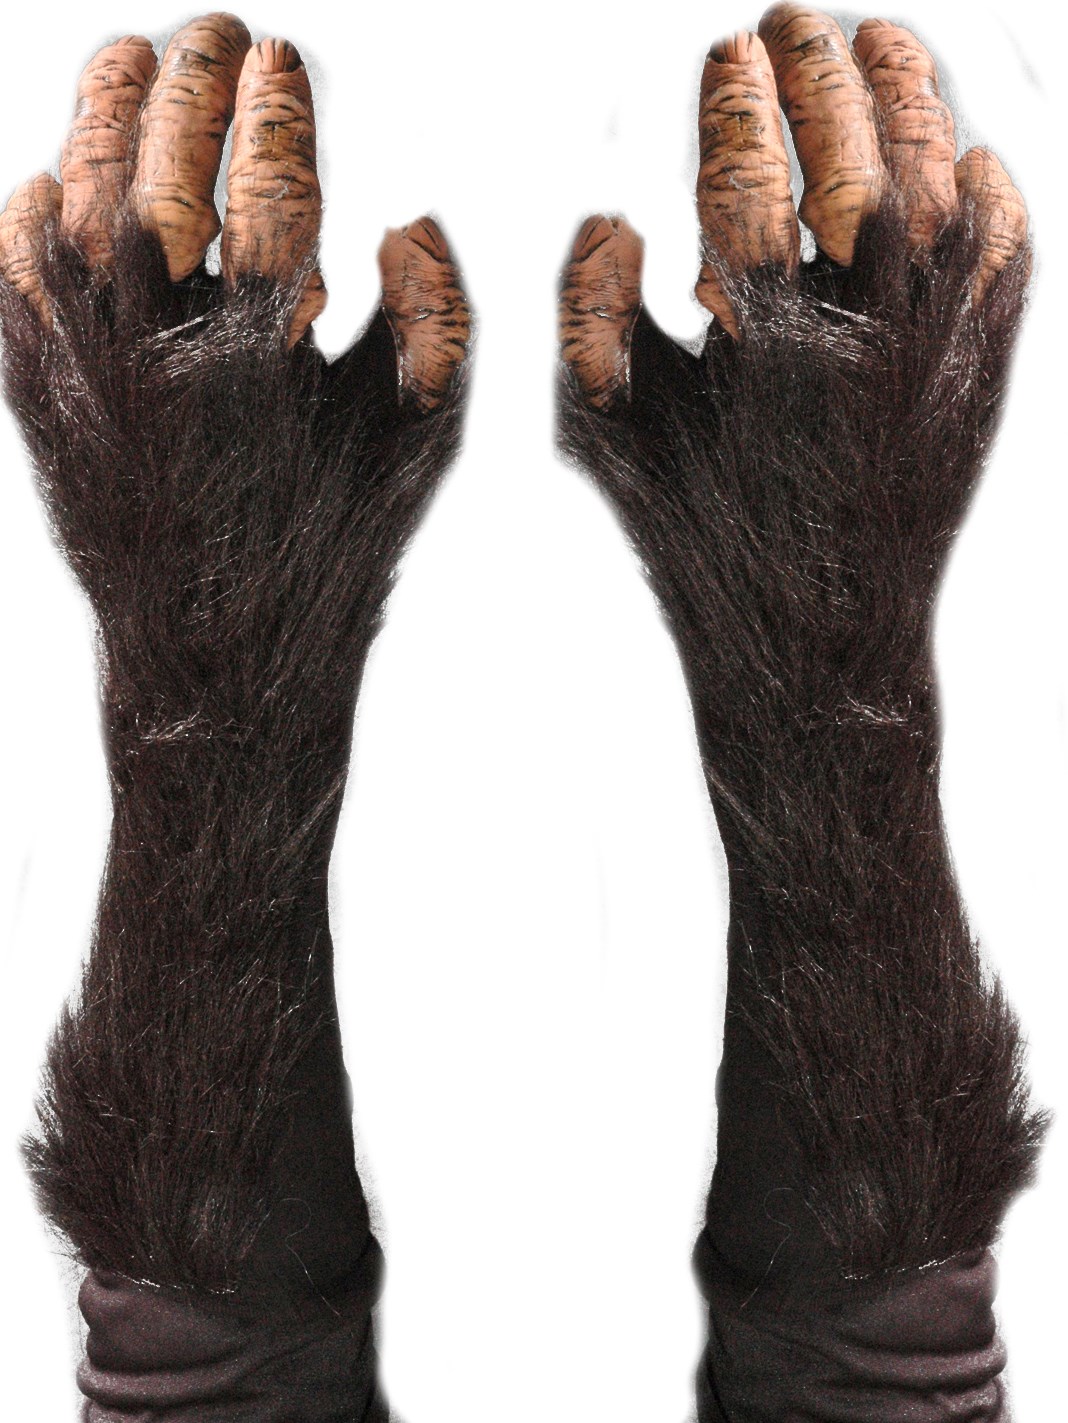 Adult Chimp Gloves